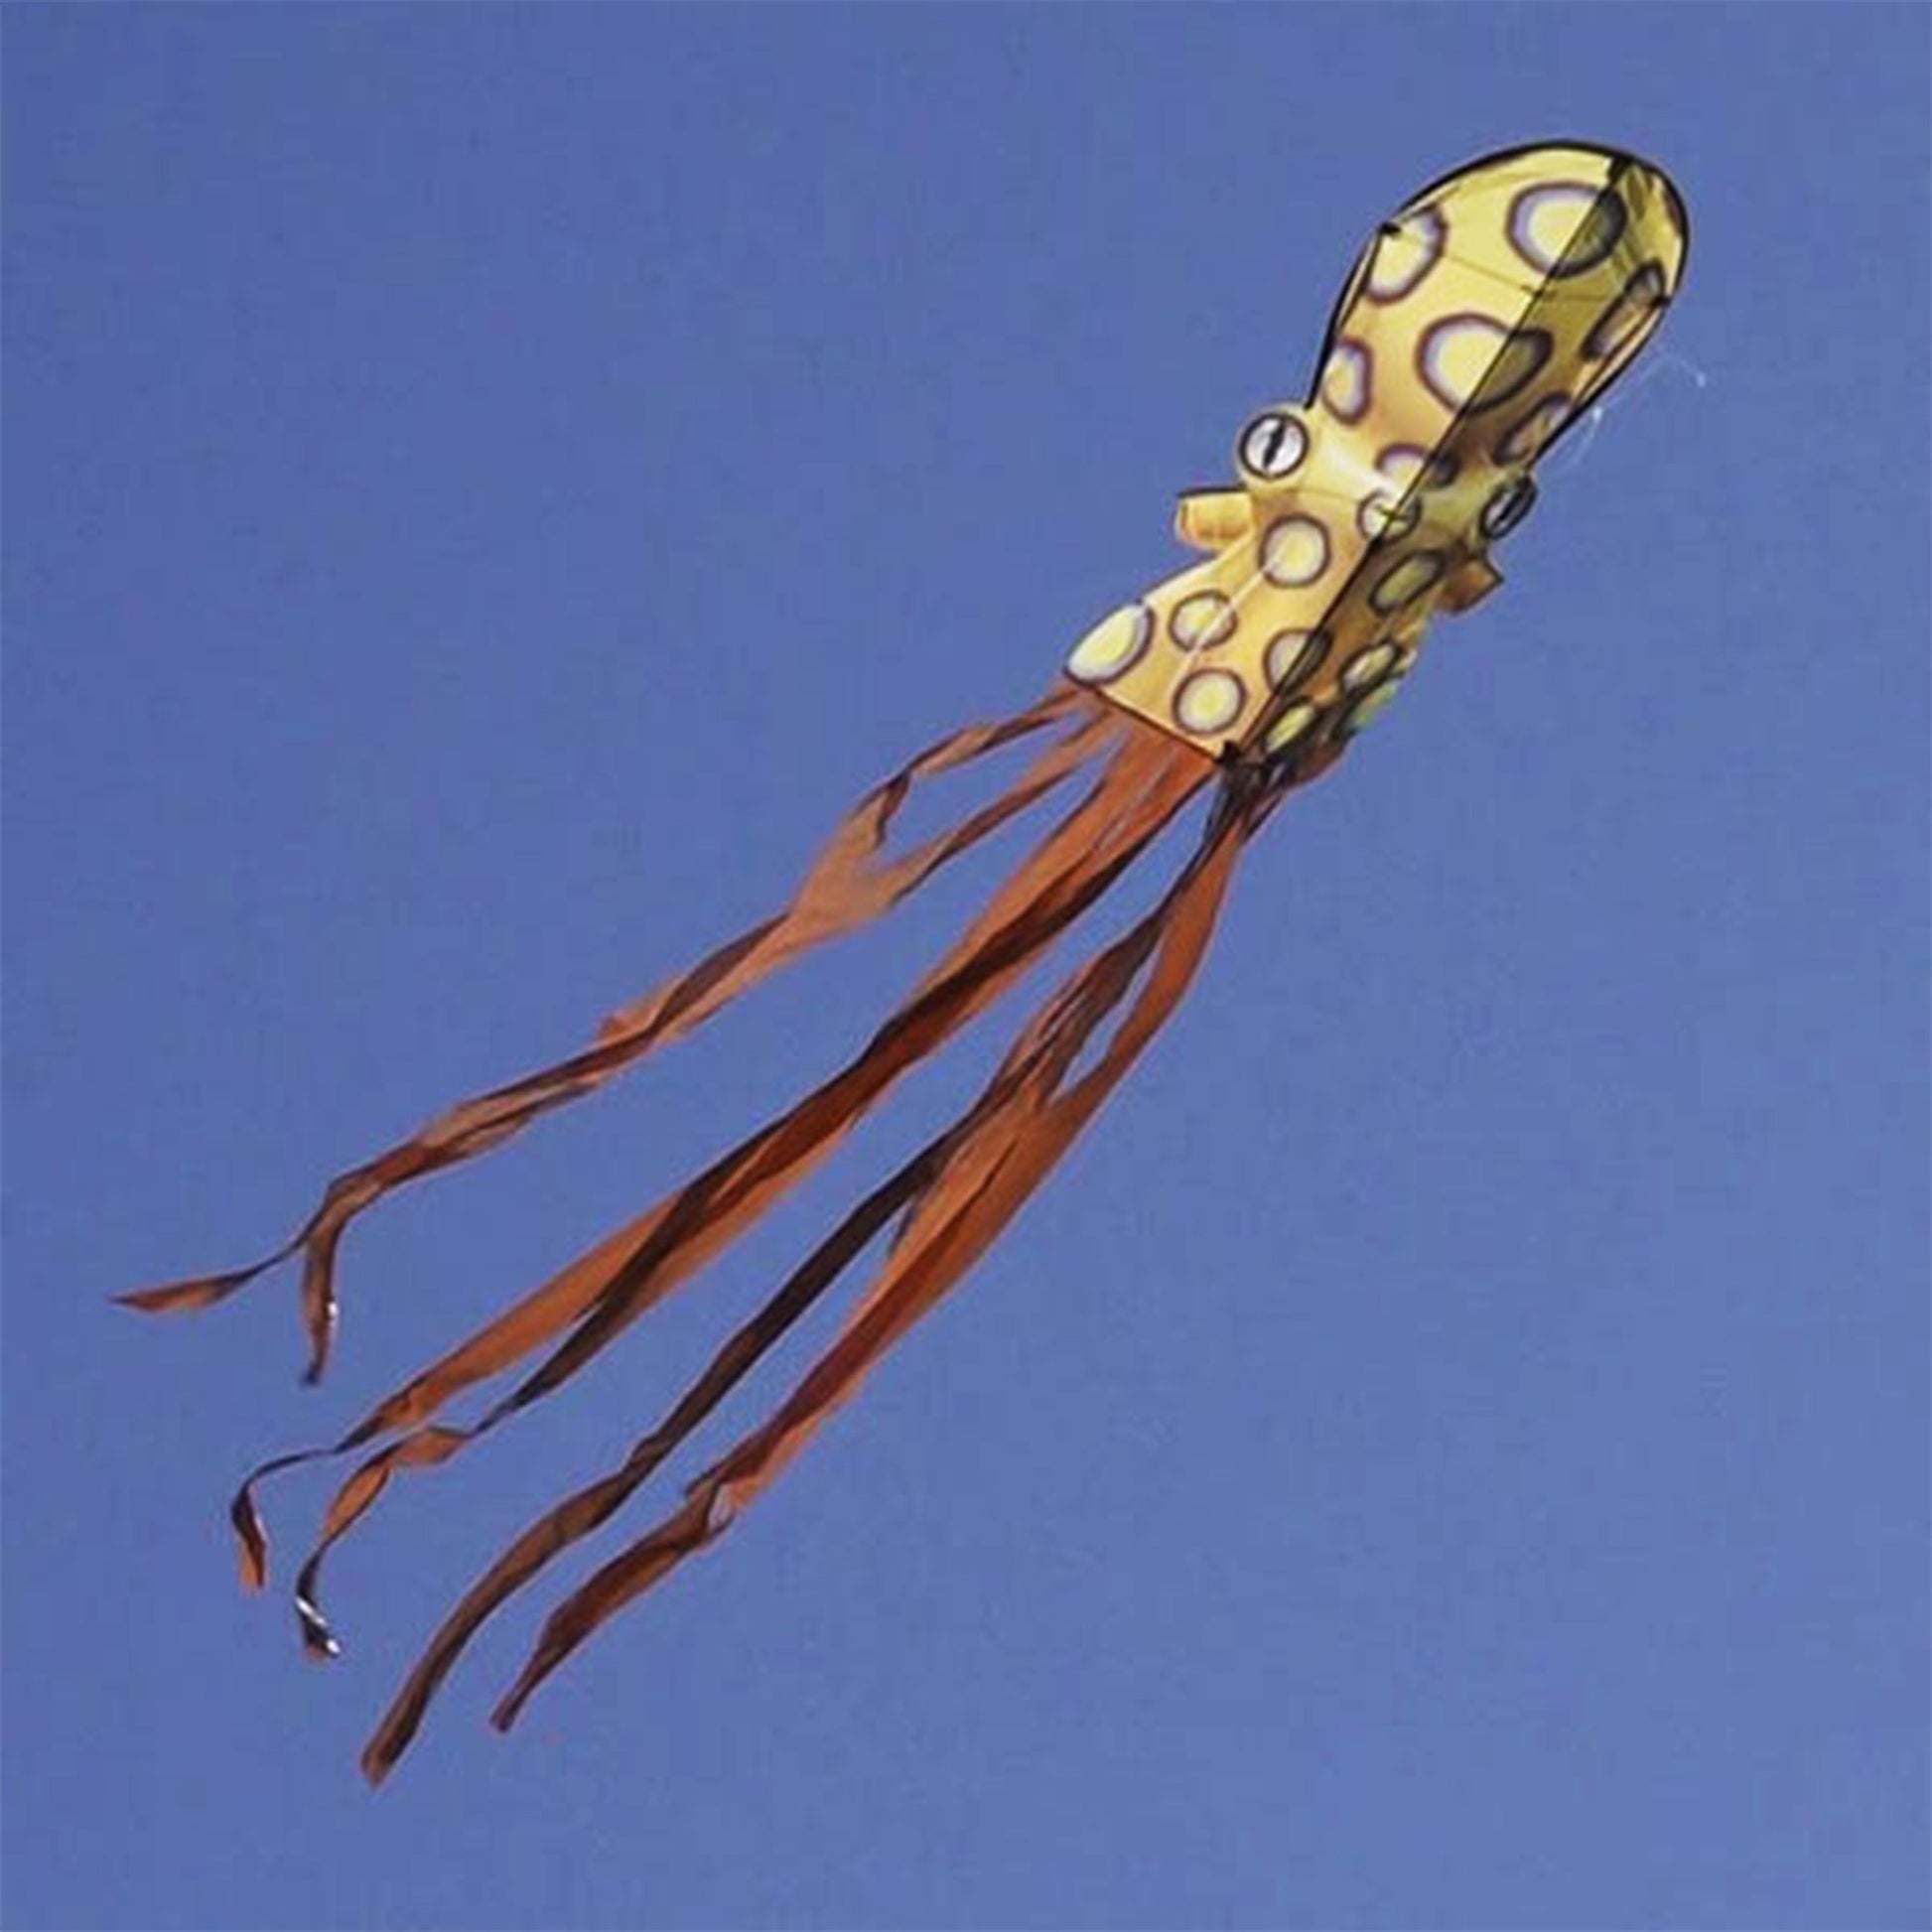 windnsun sealife octopus nylon kite flying